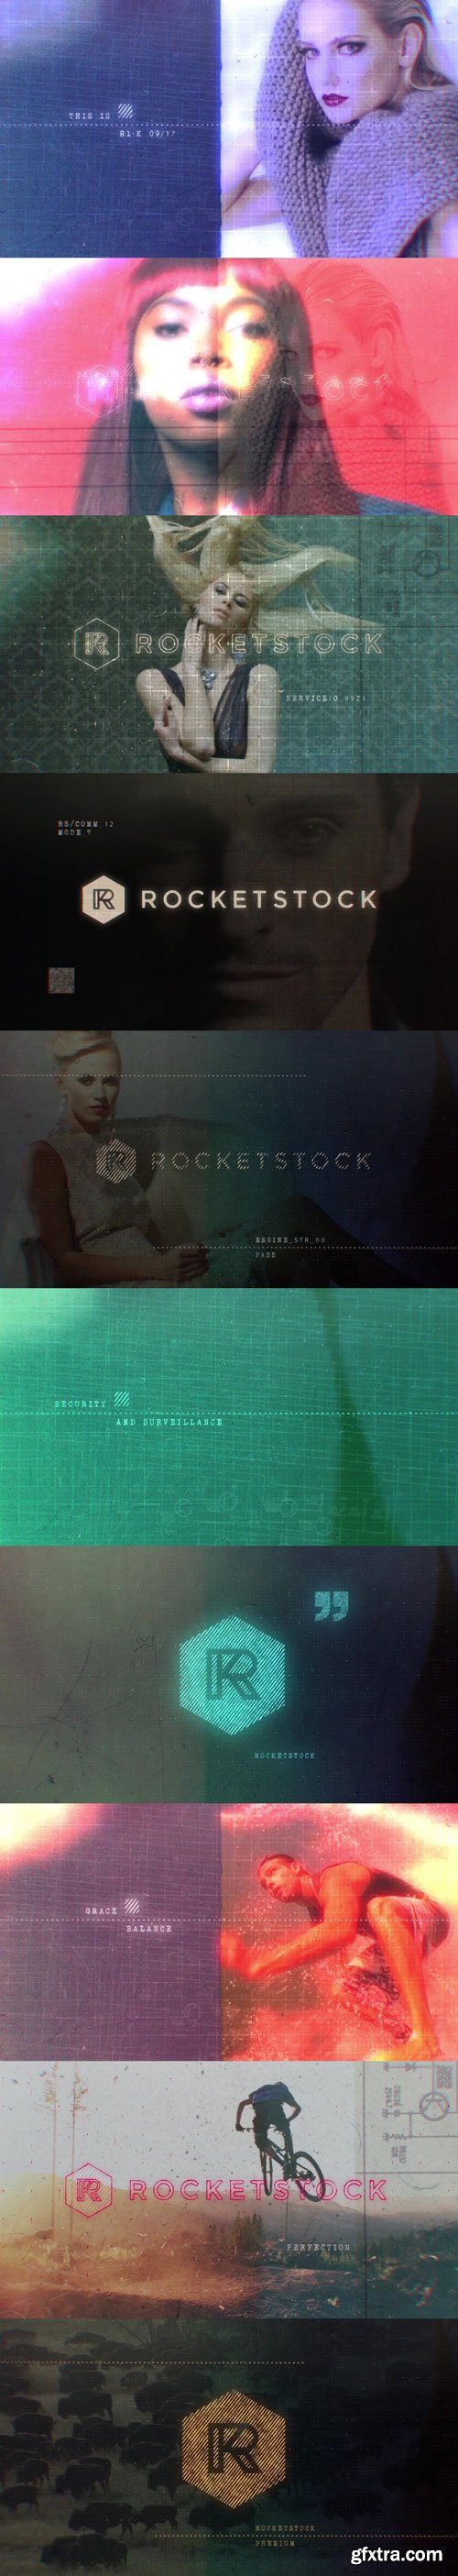 RocketStock - RS2082 - Focus